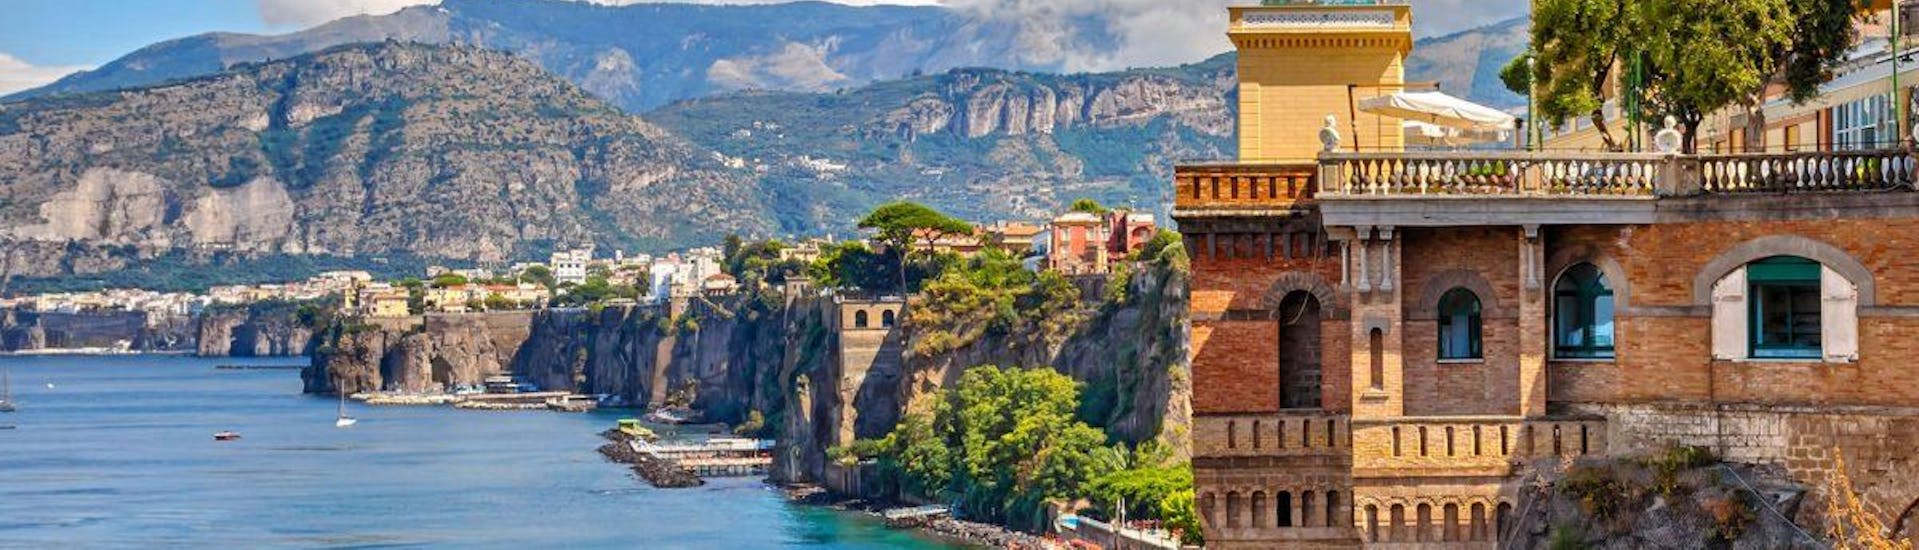 Amalfi is een van de hoogtepunten die deelnemers kunnen bewonderen tijdens de Boottocht van Napels naar Positano en Amalfi.